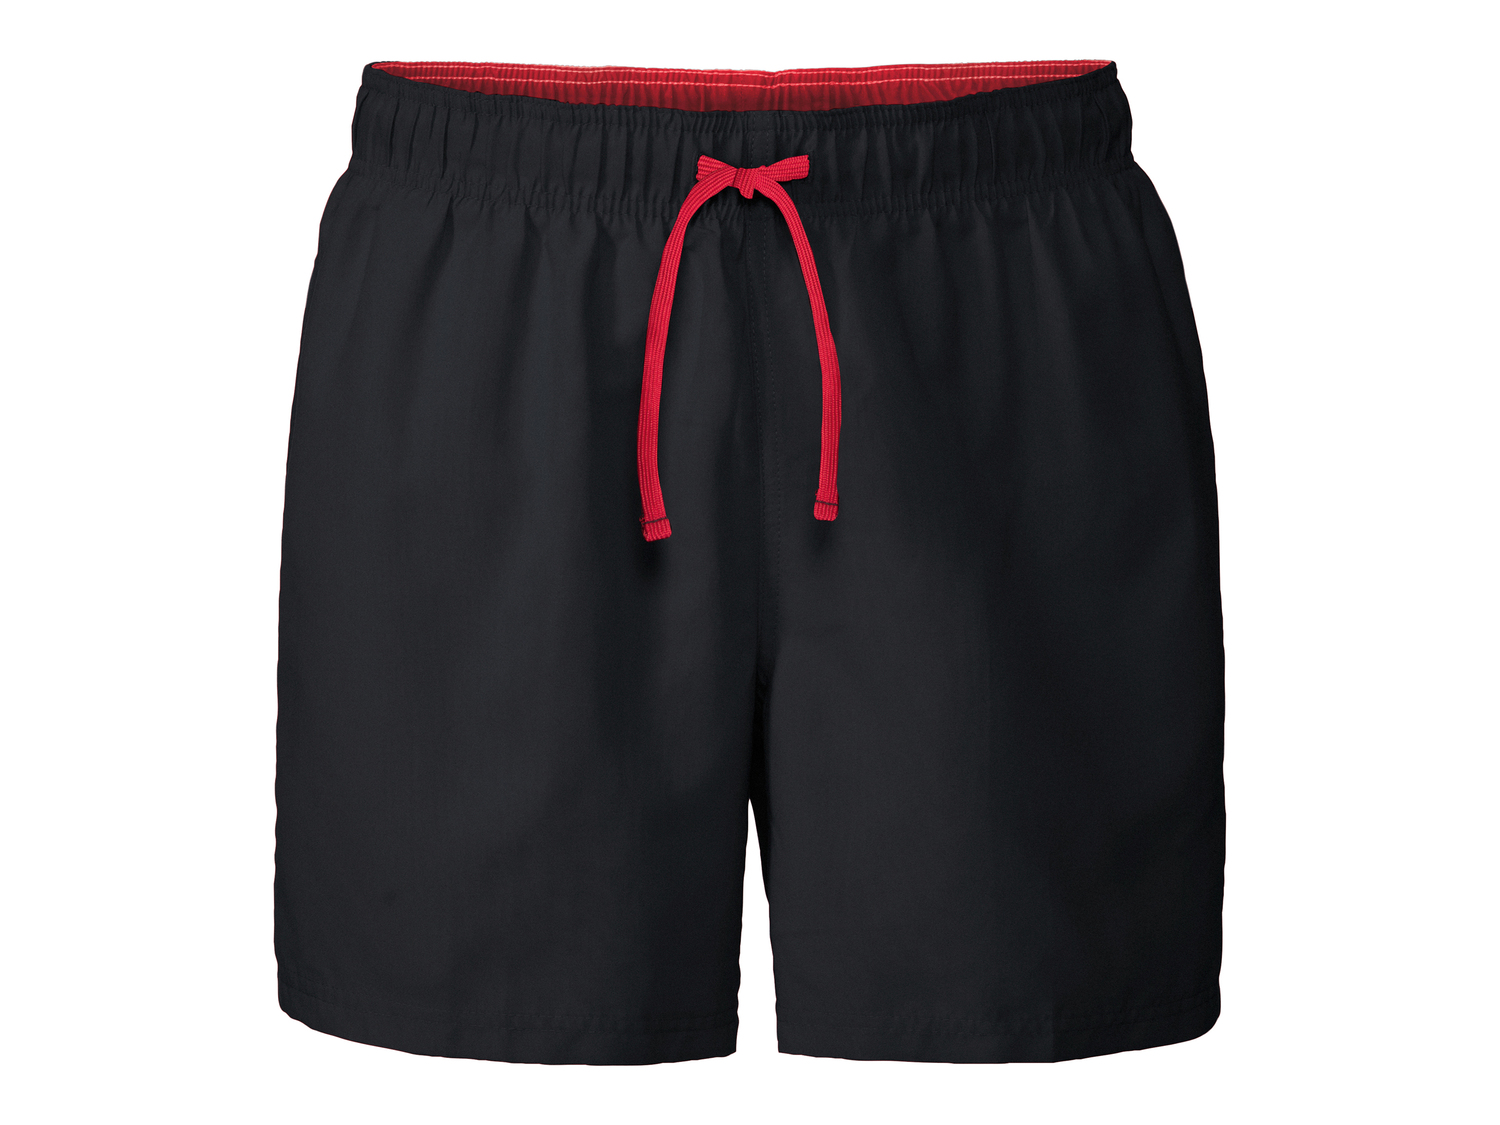 Shorts mare da uomo Livergy, prezzo 4.99 € 
Misure: S-XL
Taglie disponibili

Caratteristiche ...